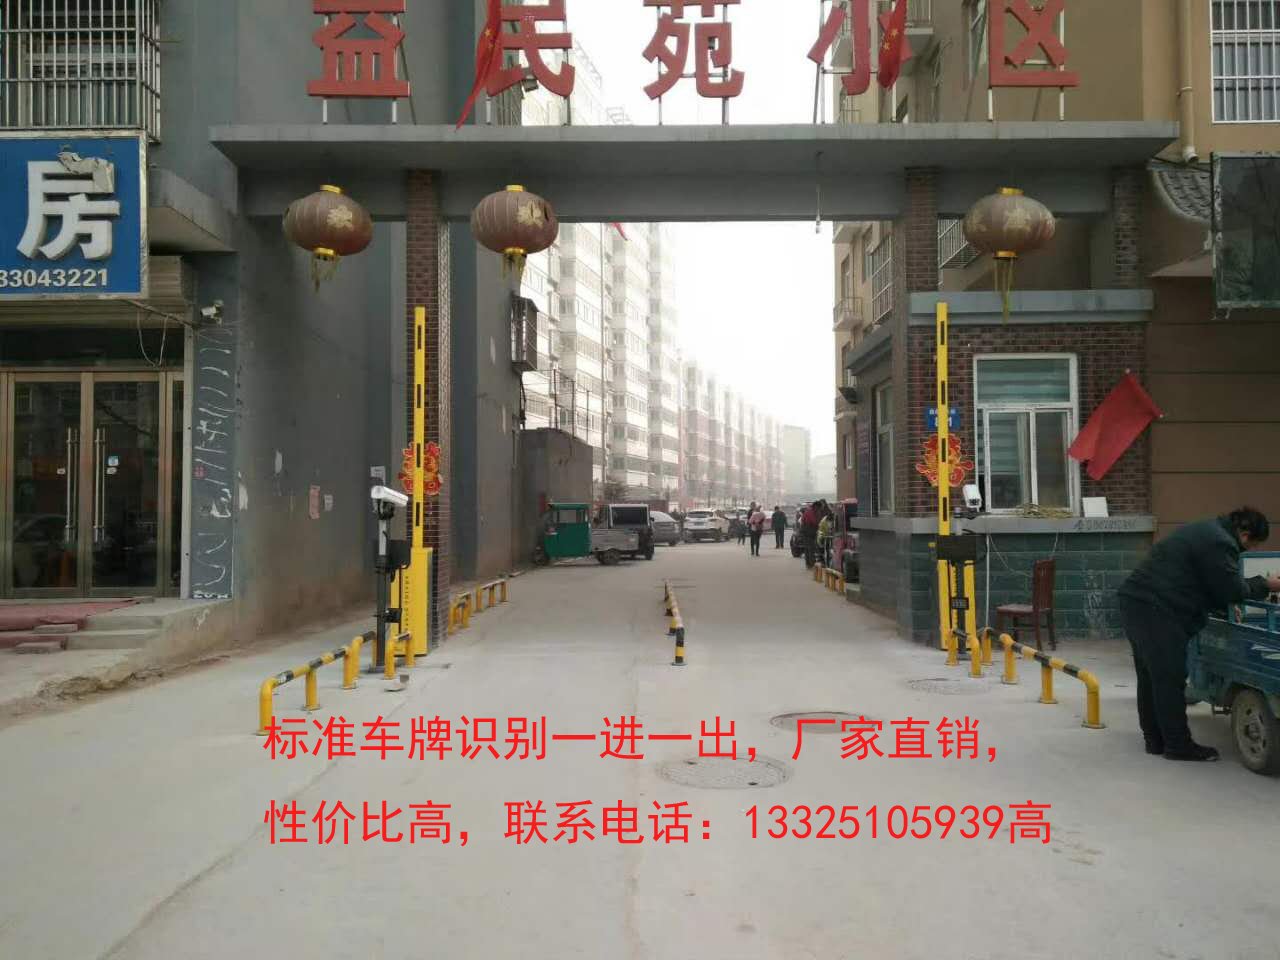 聊城天津自动识别车牌系统，车牌识别摄像机价格